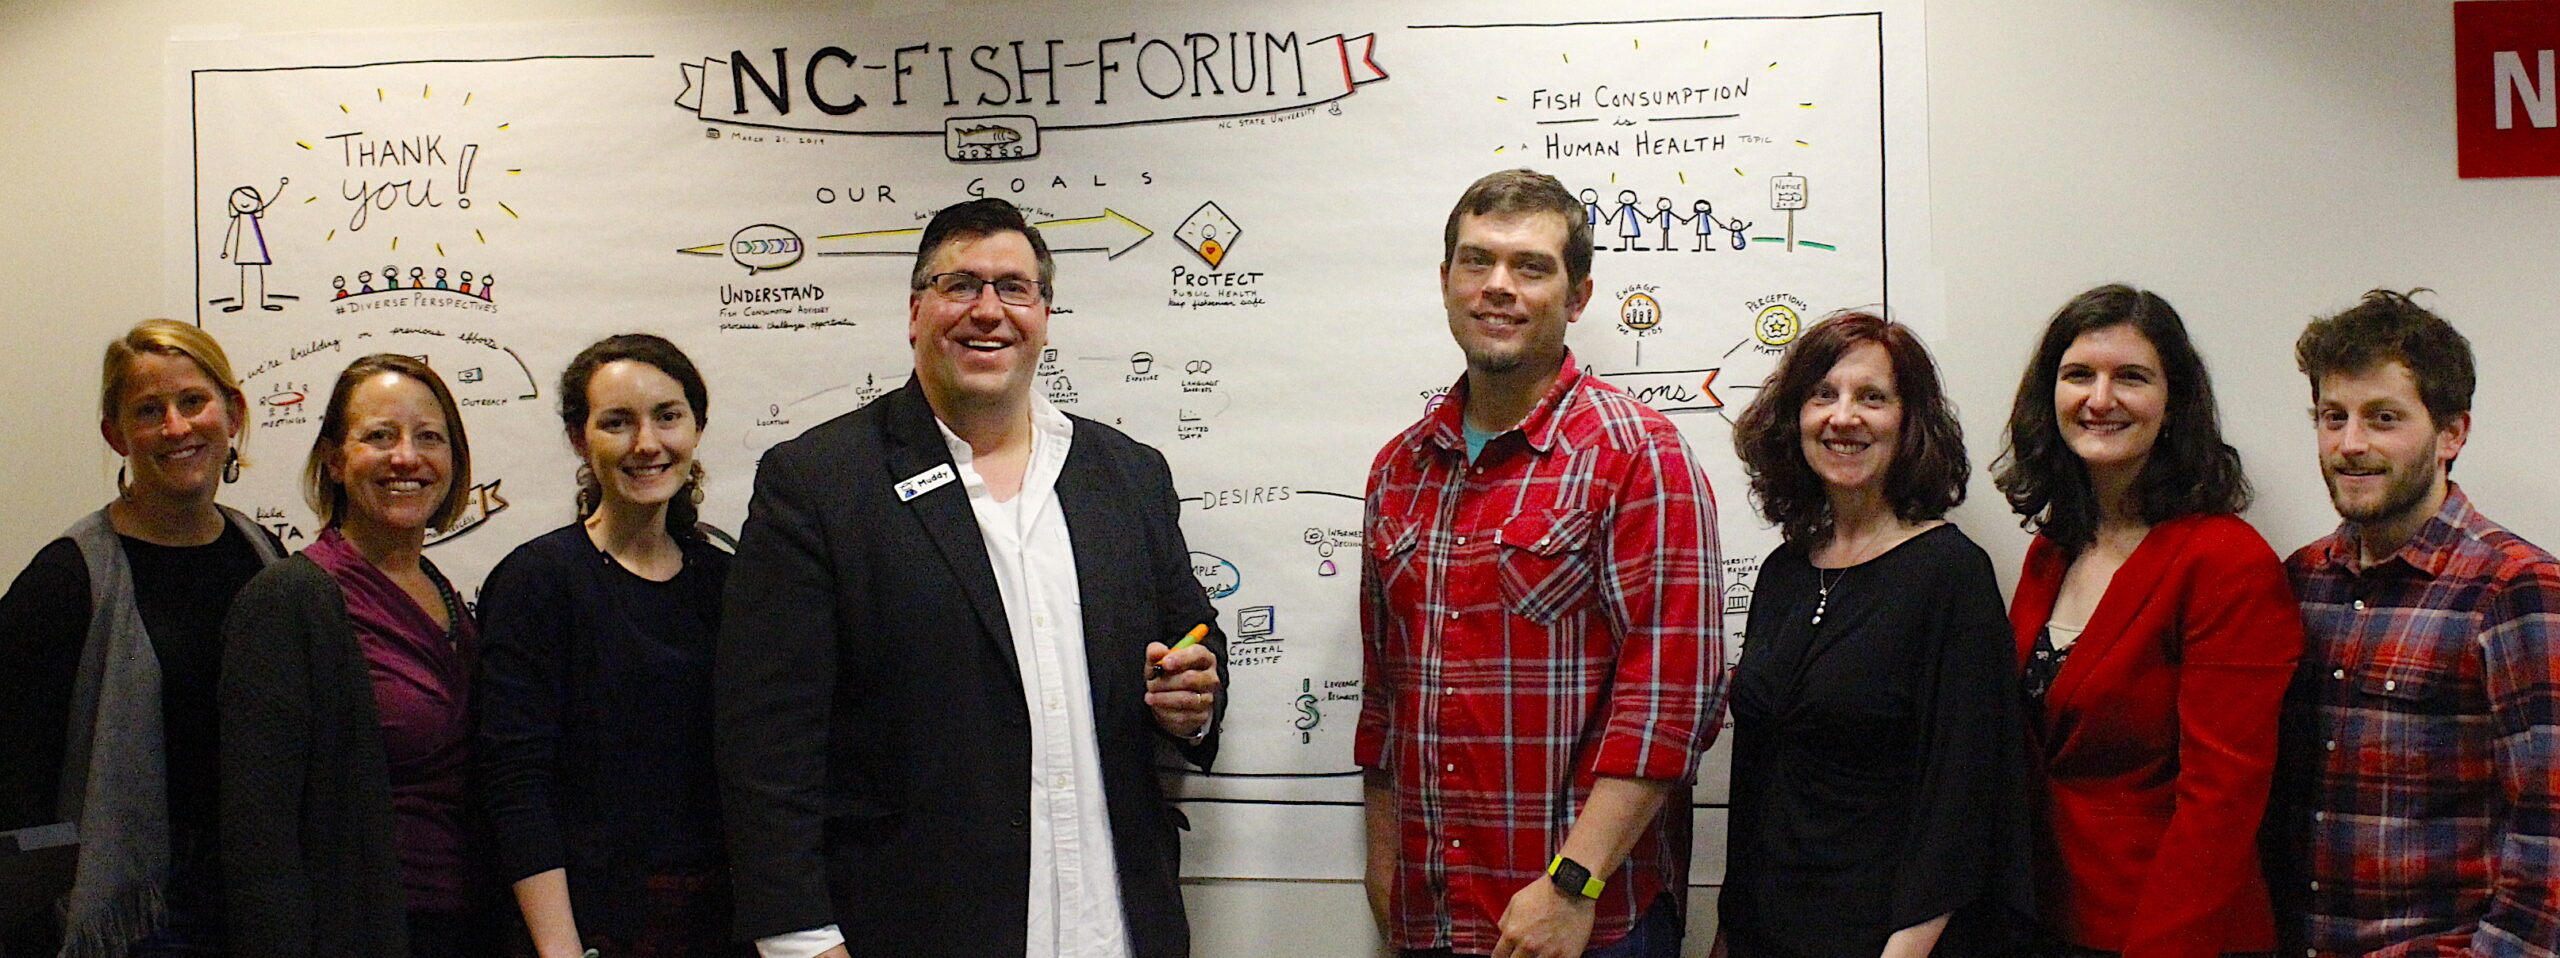 image: Fish Forum participants.